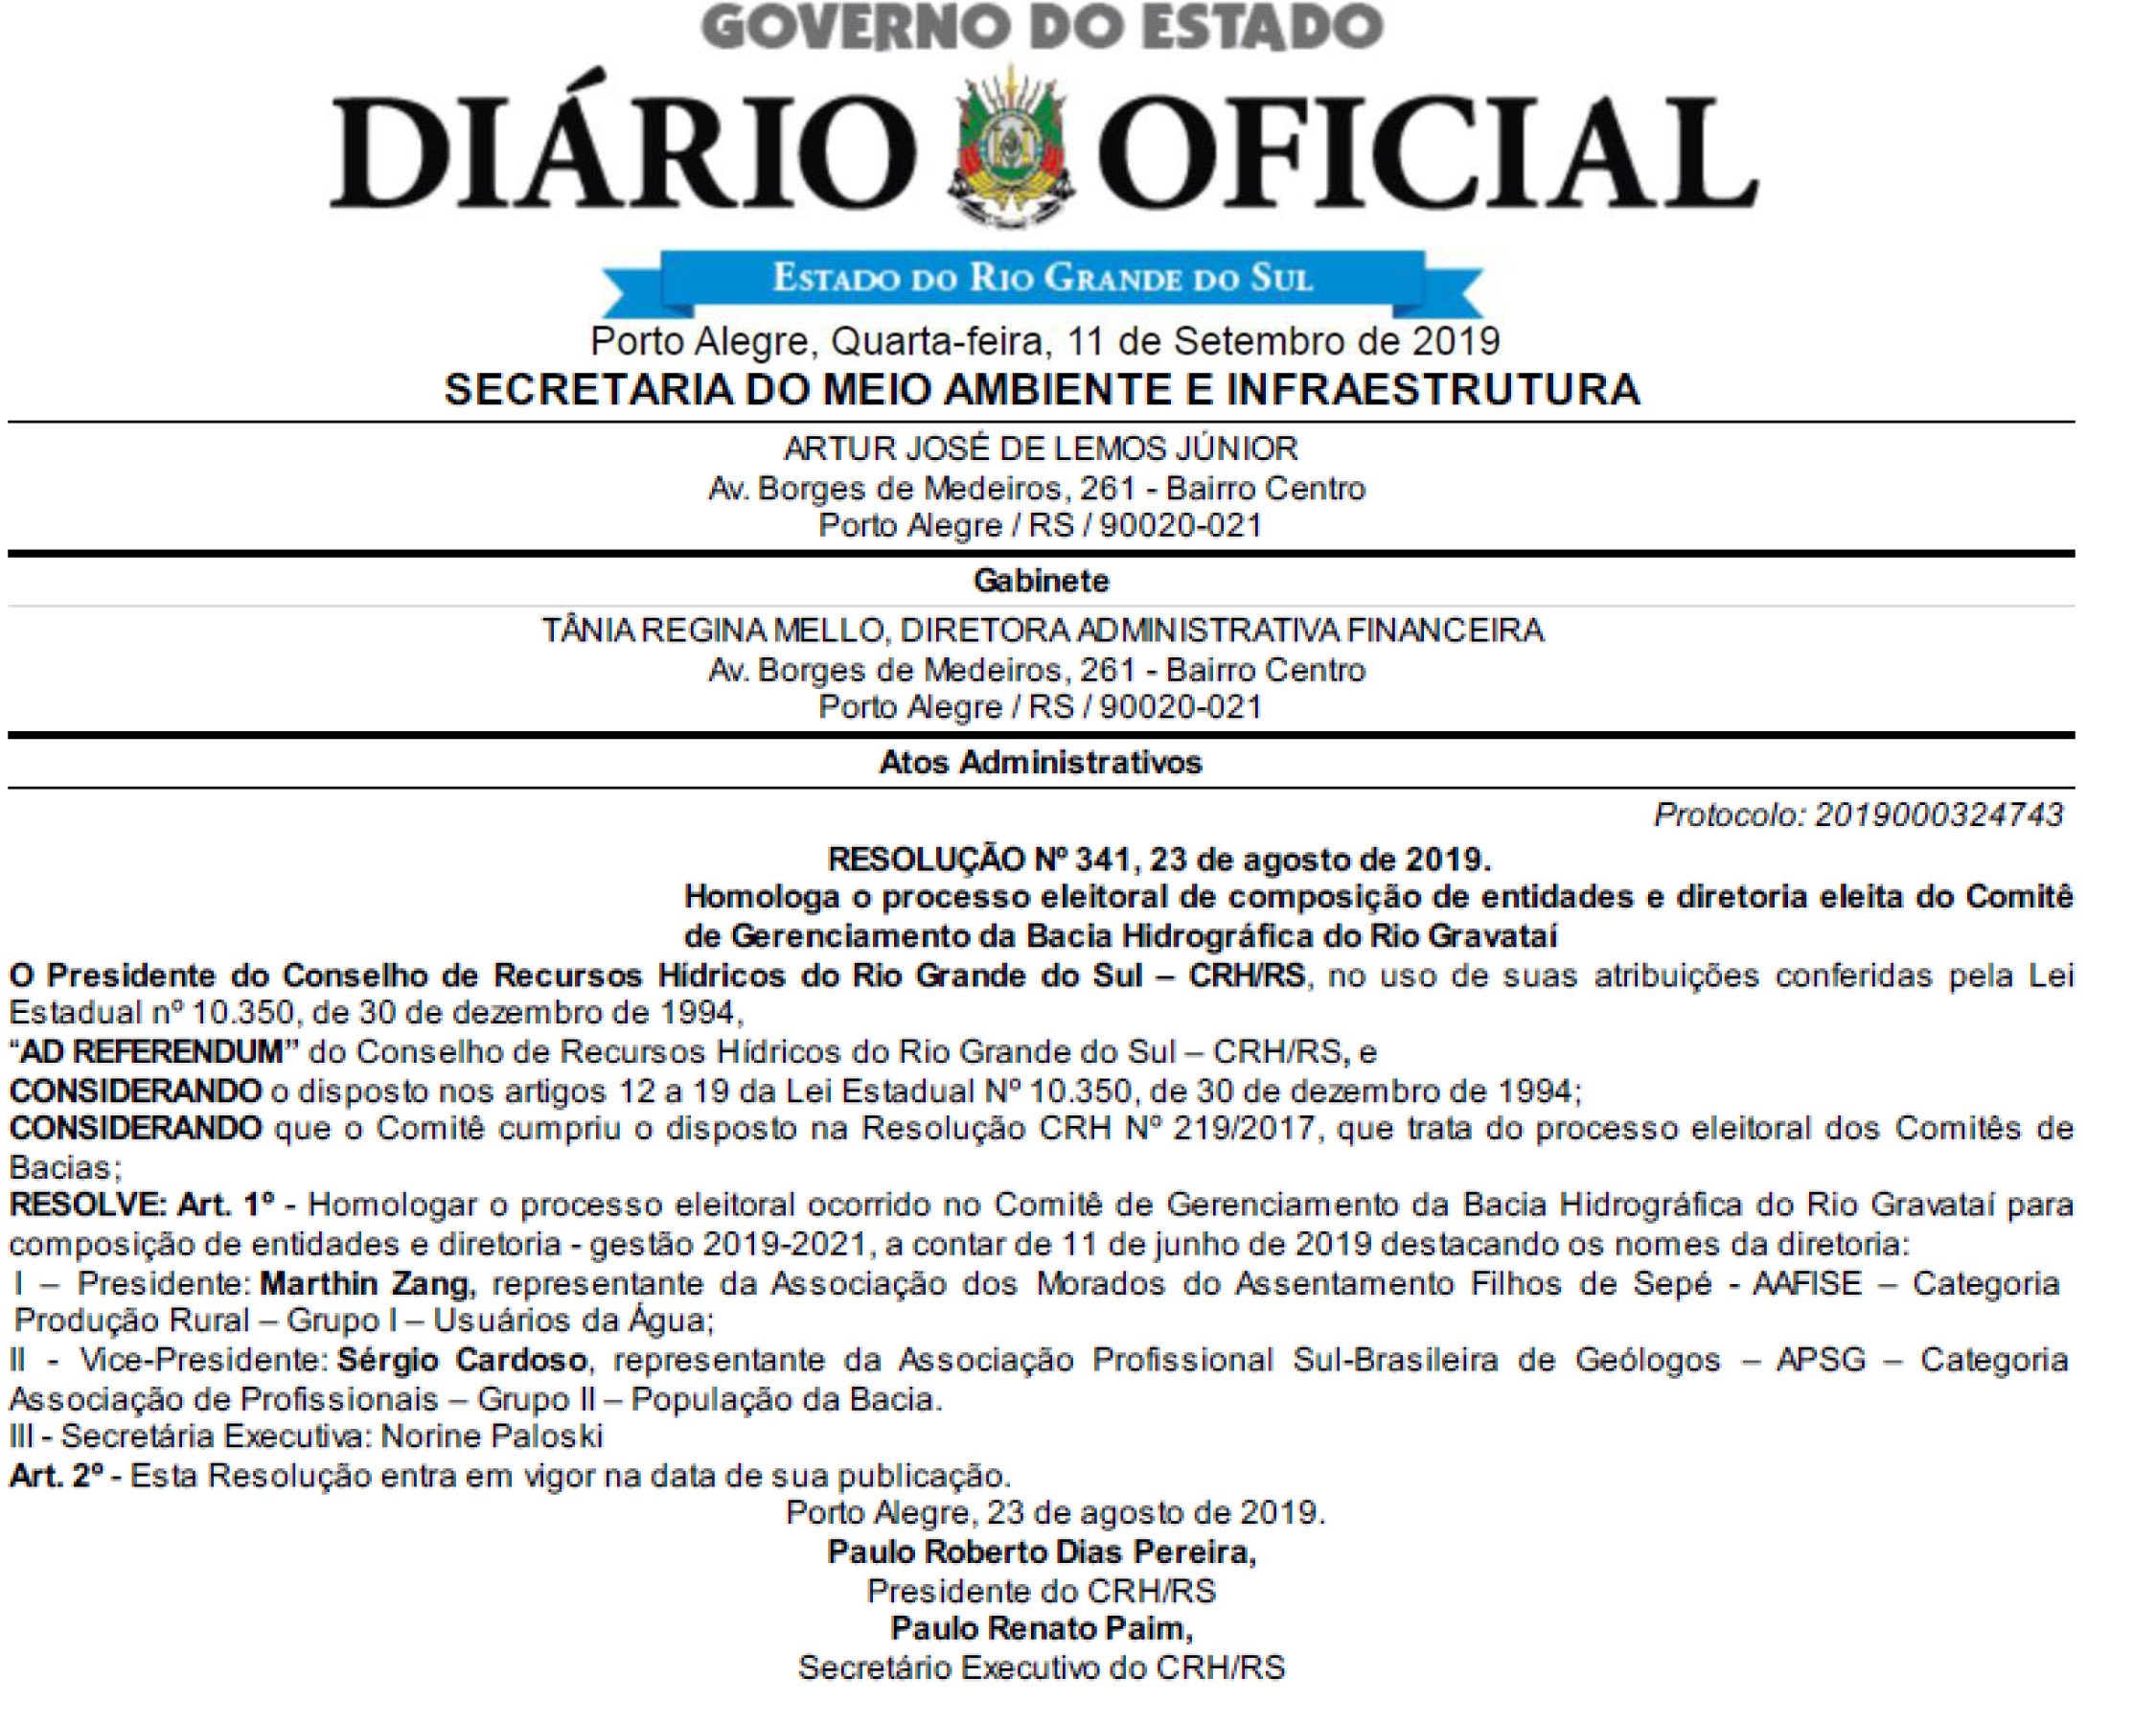 2019 Resolucao CRH 341 Homologa Processo Eleitoral Comp  Ent e Diretoria eleita Comite Rio Gravatai 1109